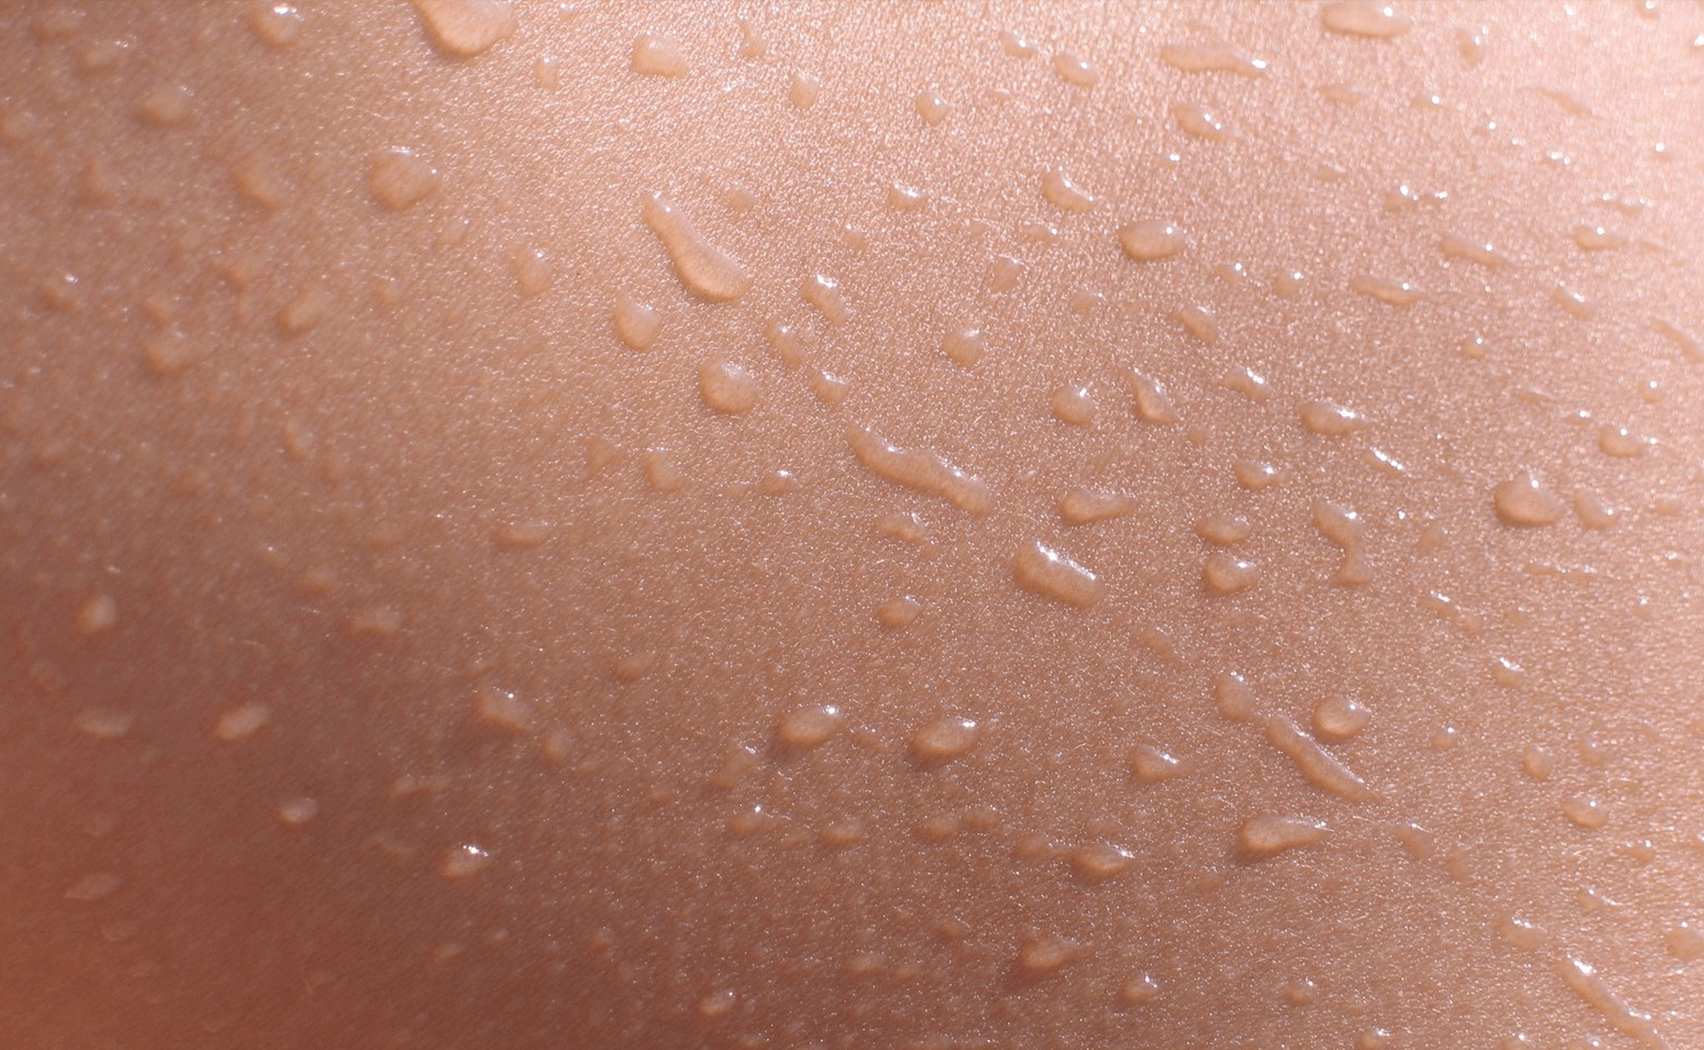 Dehydrated skin